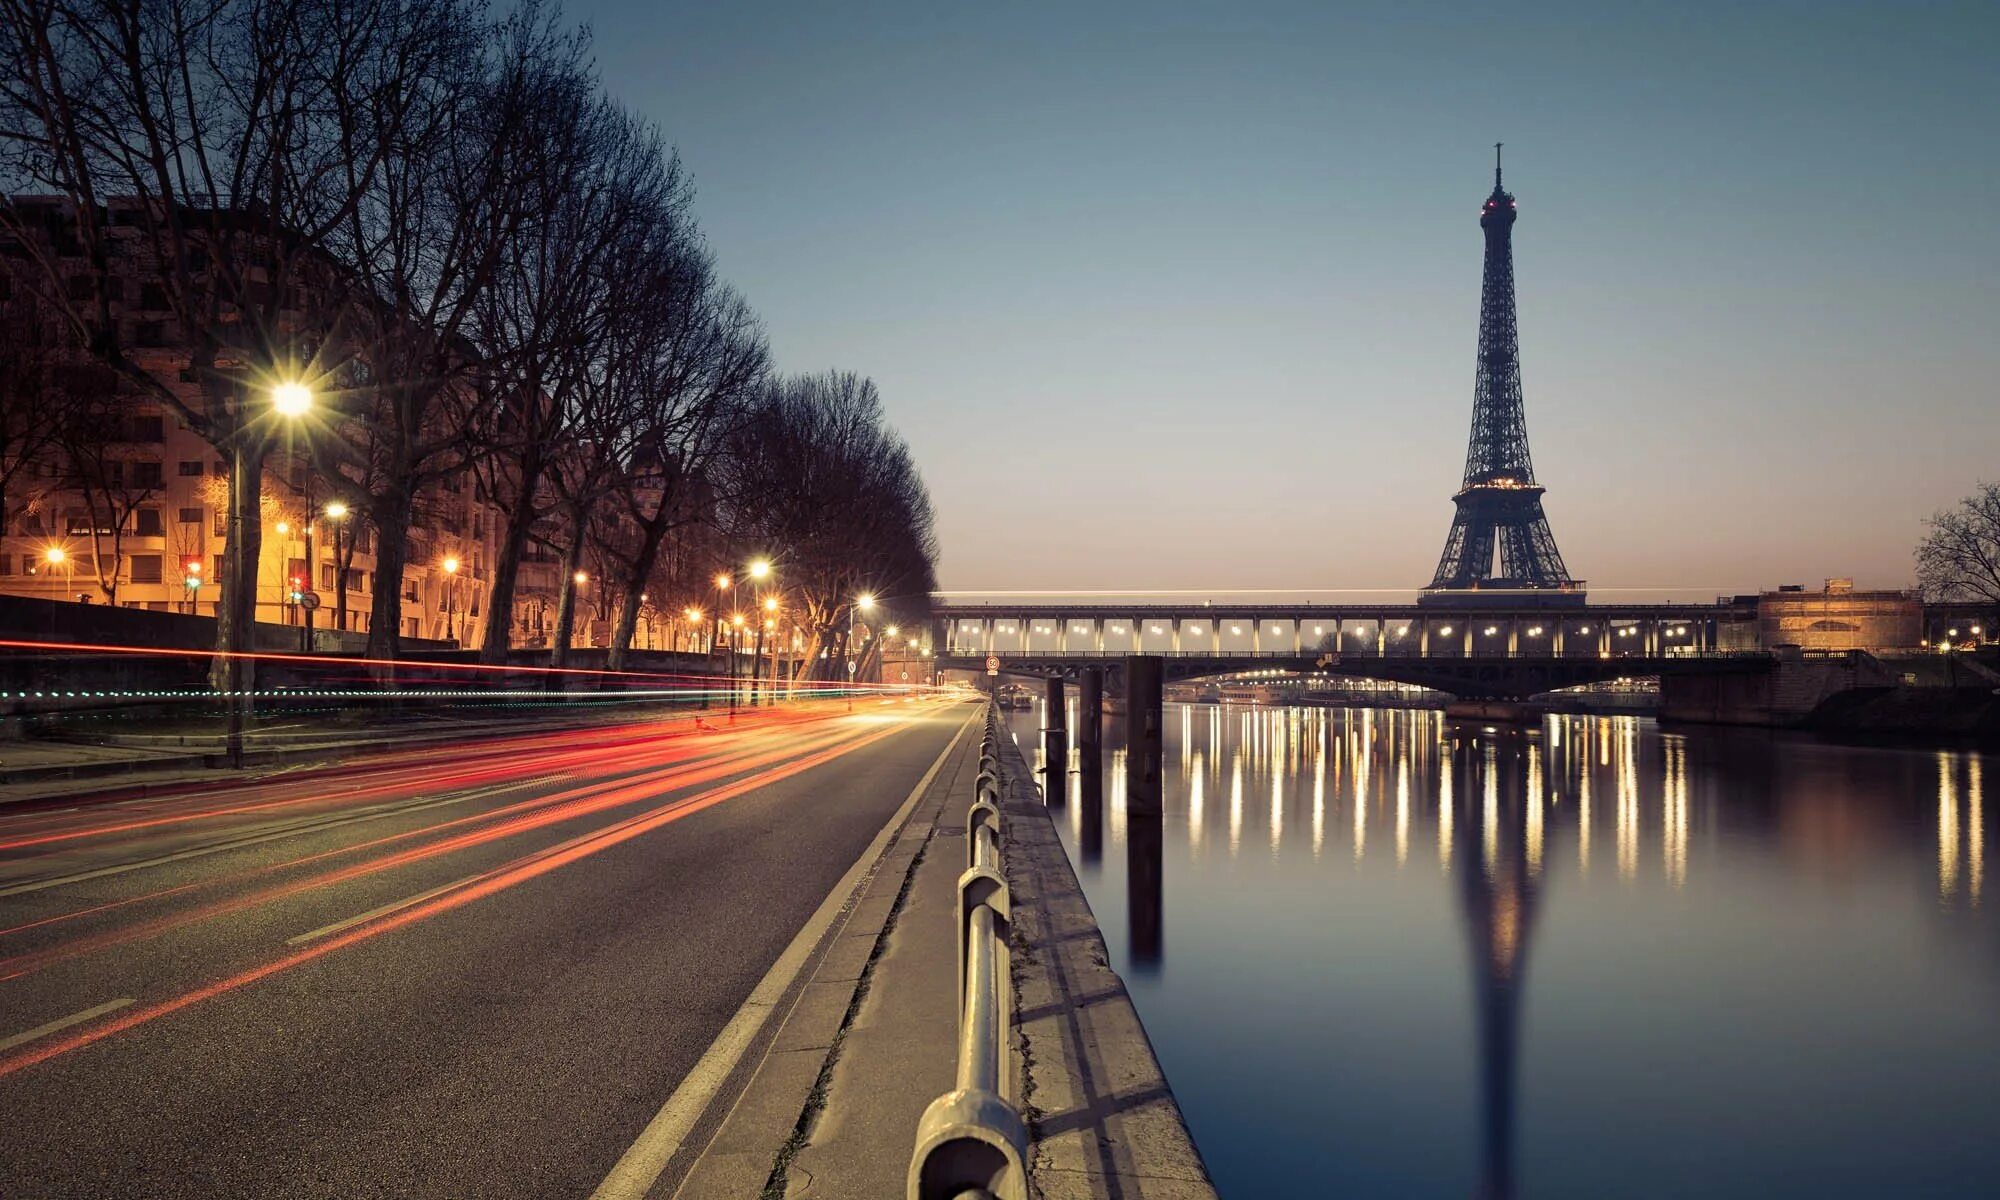 Картинки для фона. Холст TOPPOSTERS V-247. Франция Париж Эйфелева башня. Франция Эйфель мост. TOPPOSTERS V-247 модульный холст 125х80.